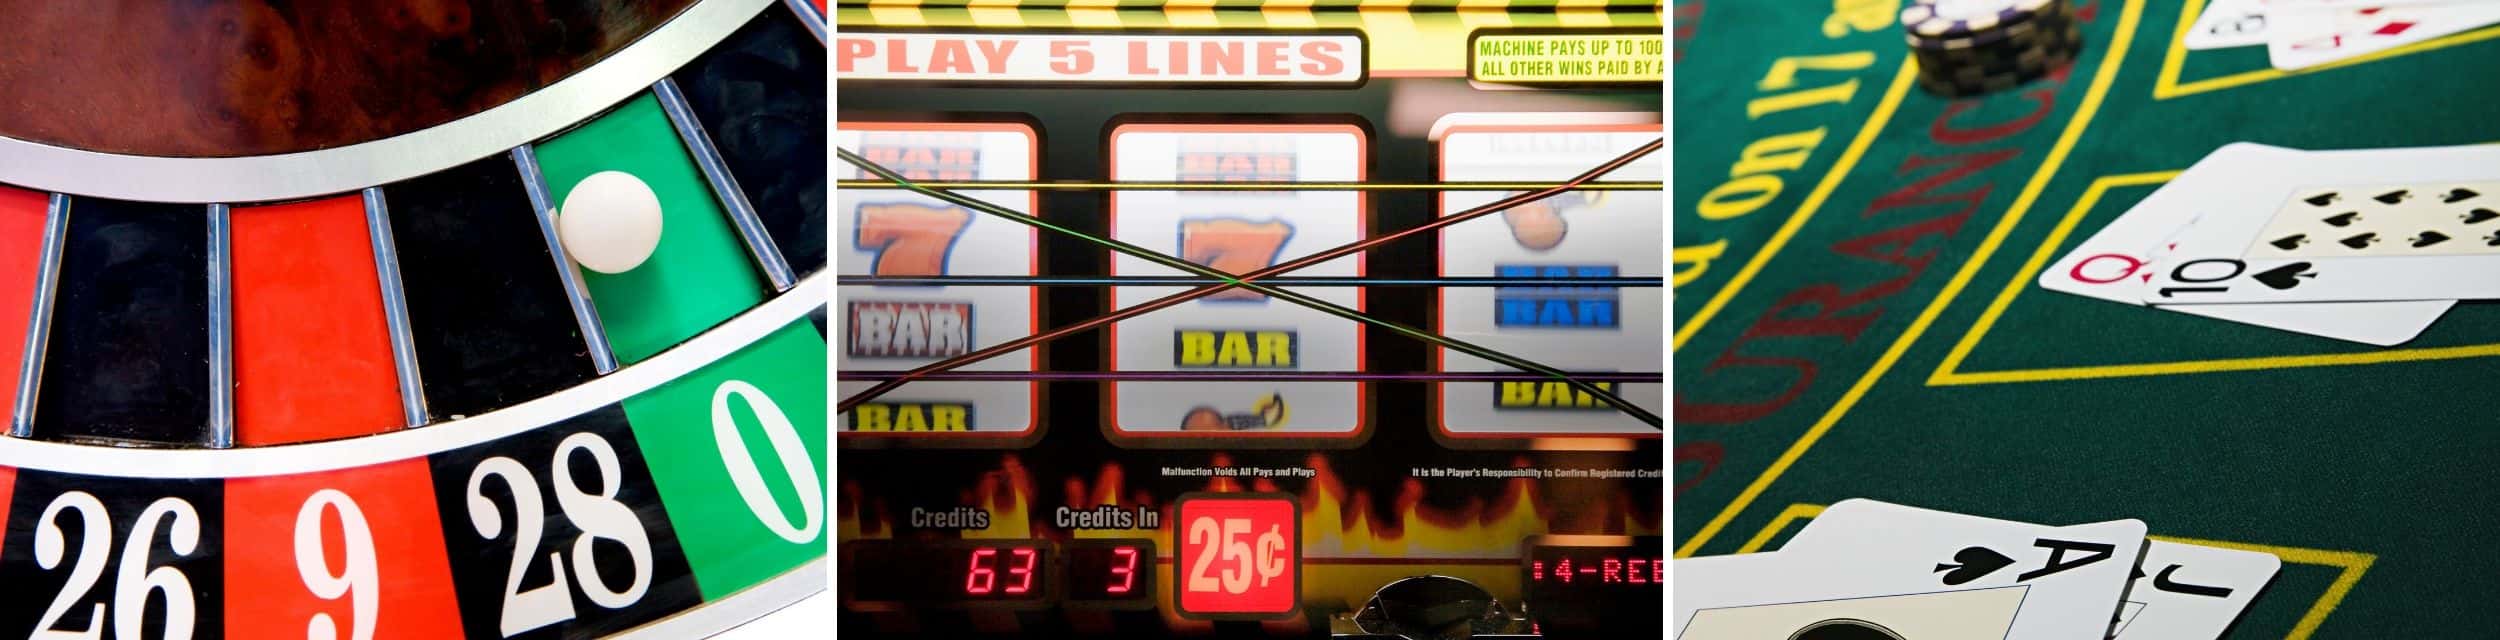 Villkor för bonusar casino dick